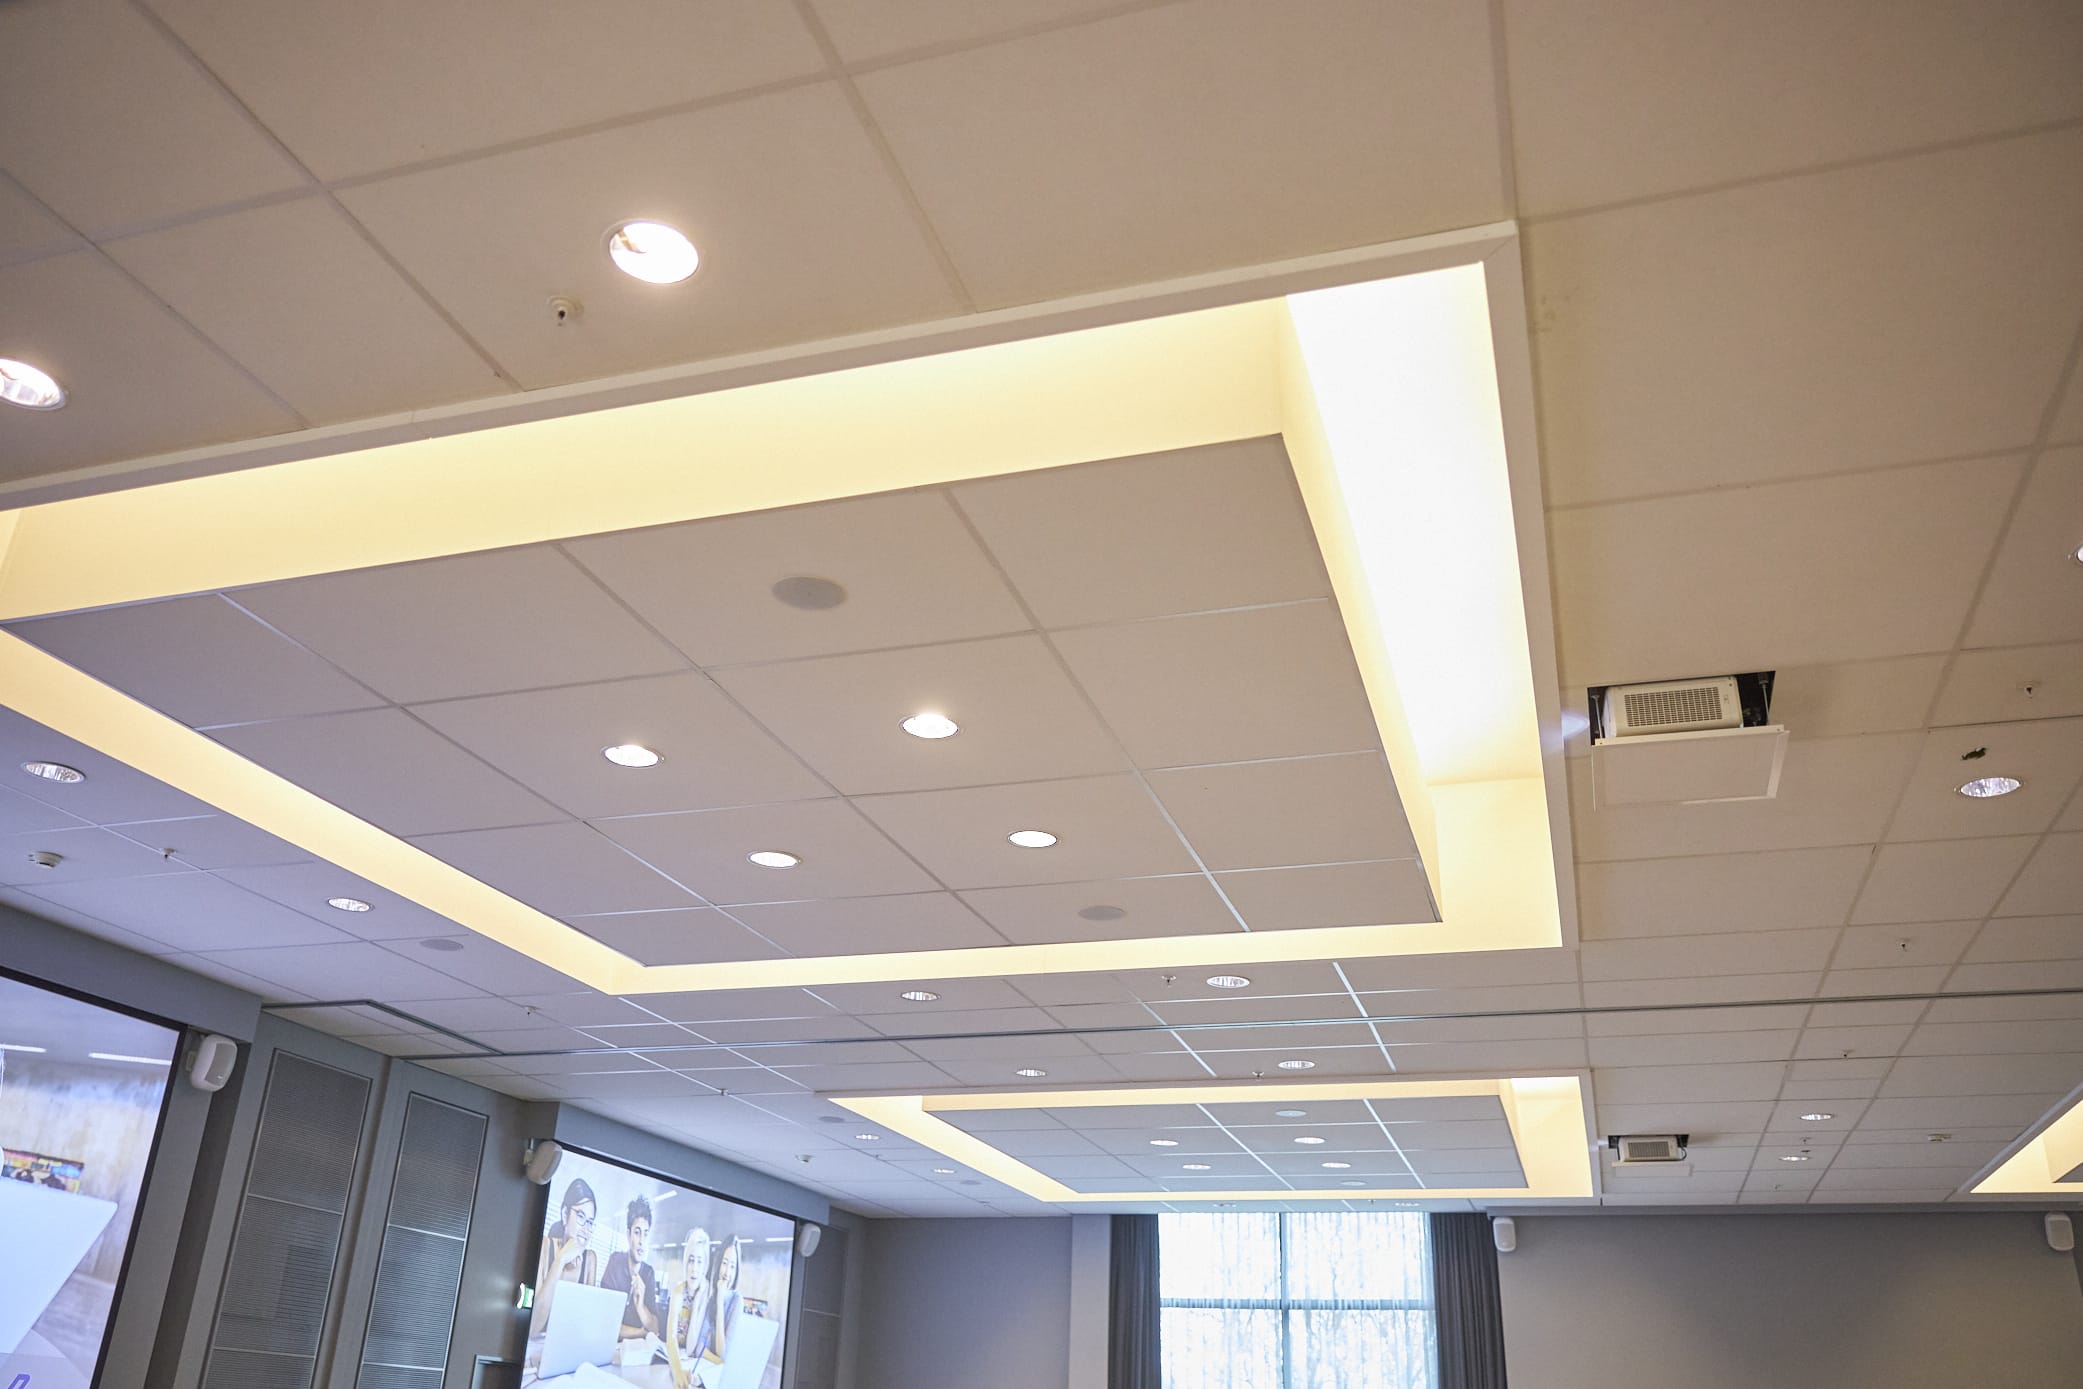 Geluidsinstallatie kantoor met speakers in plafond